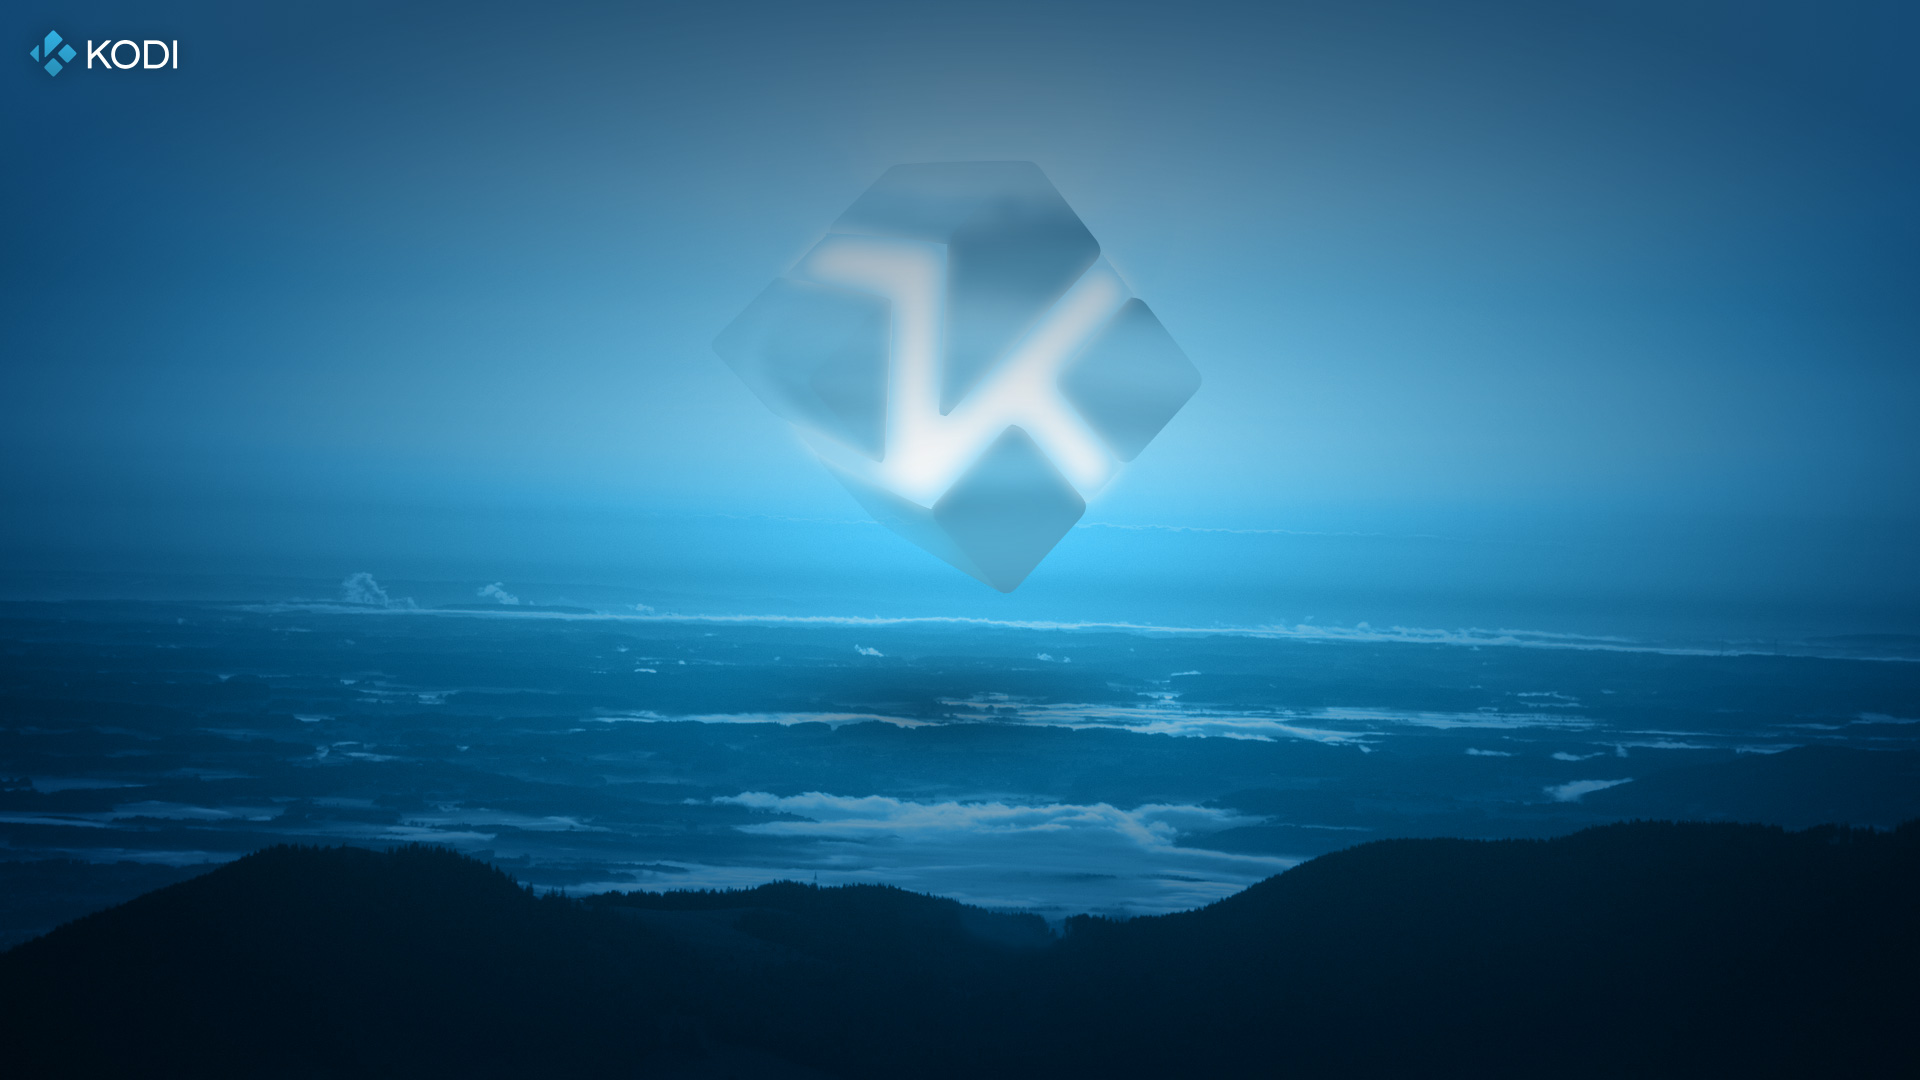 Introducing The Kodi Logo